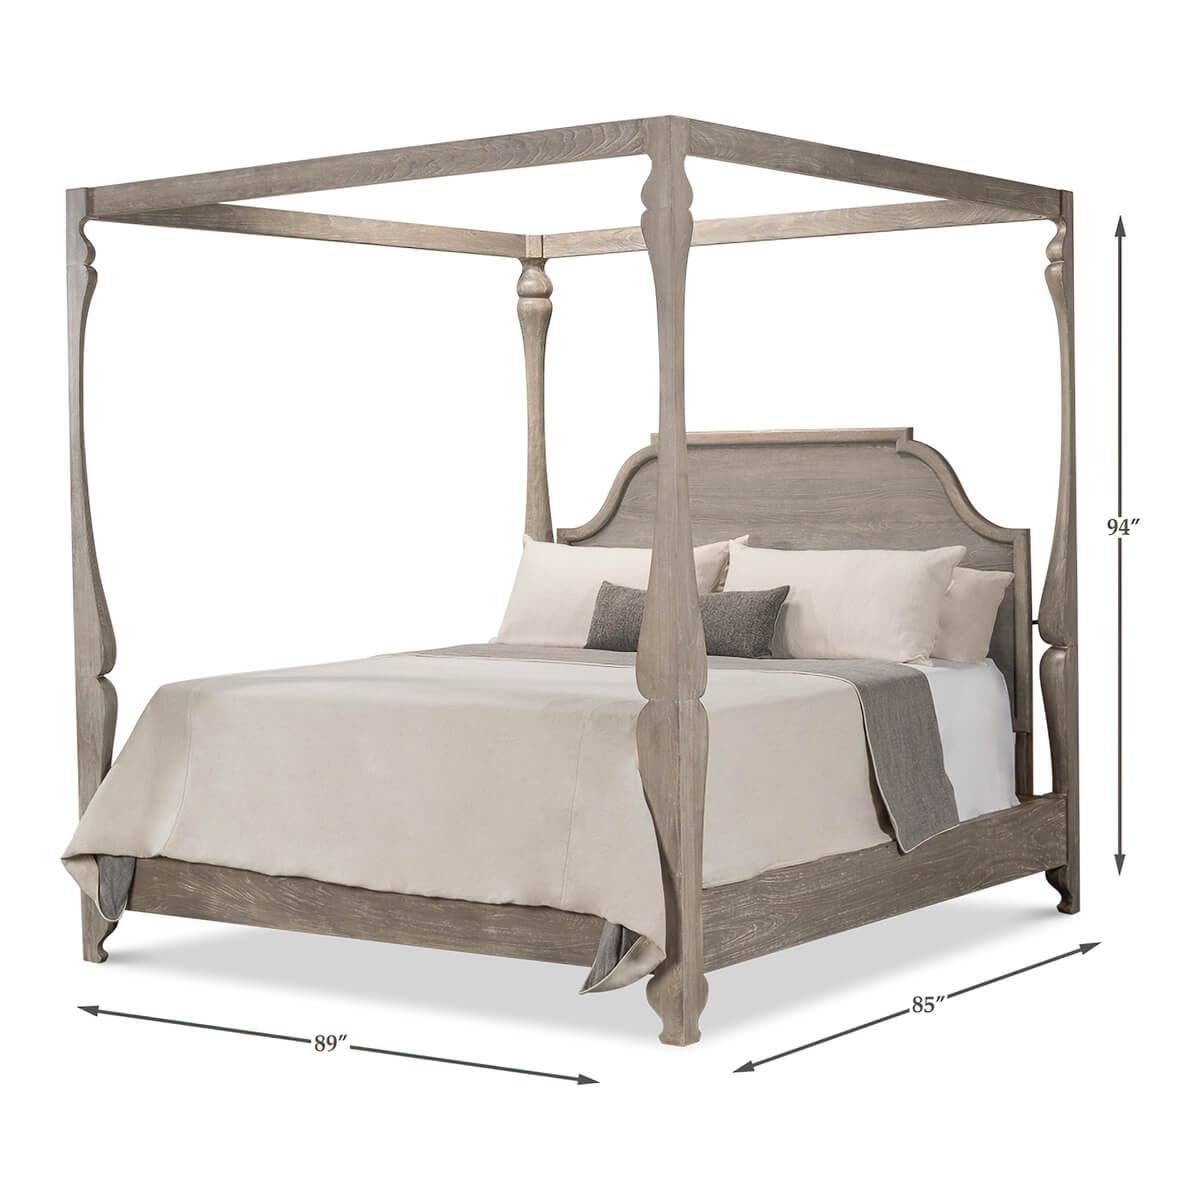 Un lit à baldaquin de style européen avec une finition gris moonstone. Ce lit présente des montants magnifiquement sculptés en bois de hêtre et rehaussés de fer et de laiton. 

Dimensions : 89